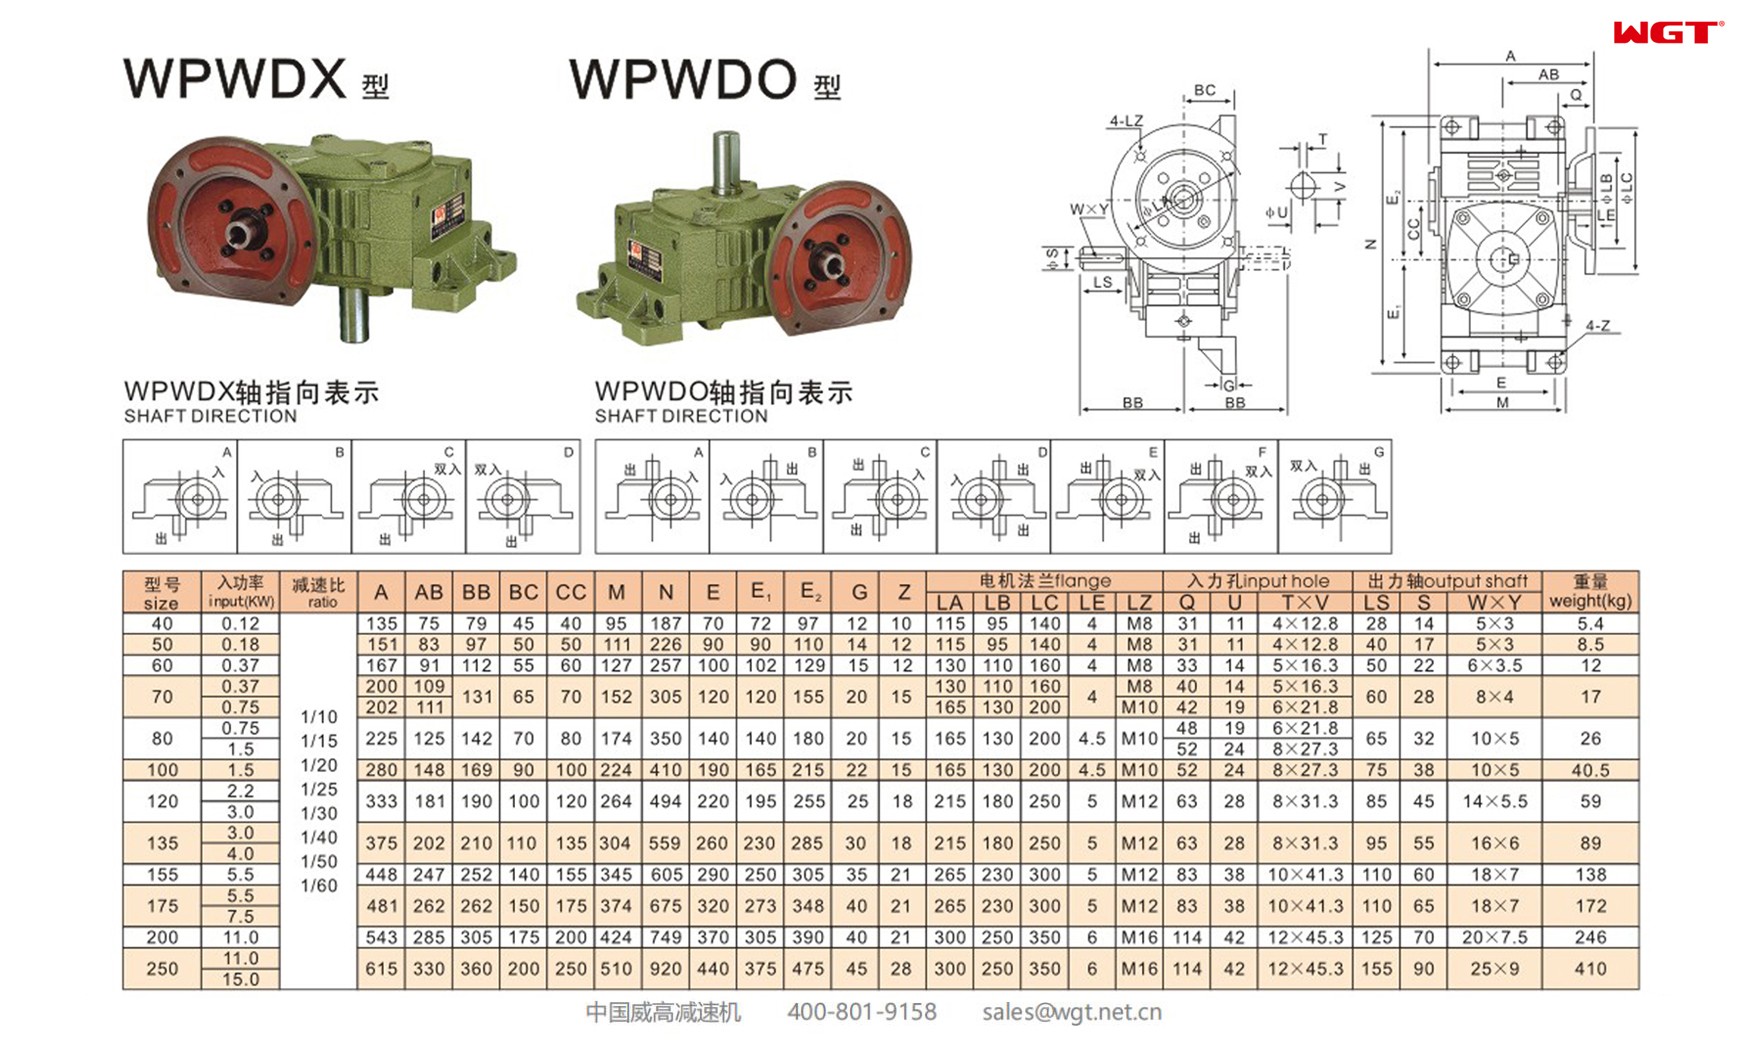 WPWDX135 worm gear reducer universal speed reducer 